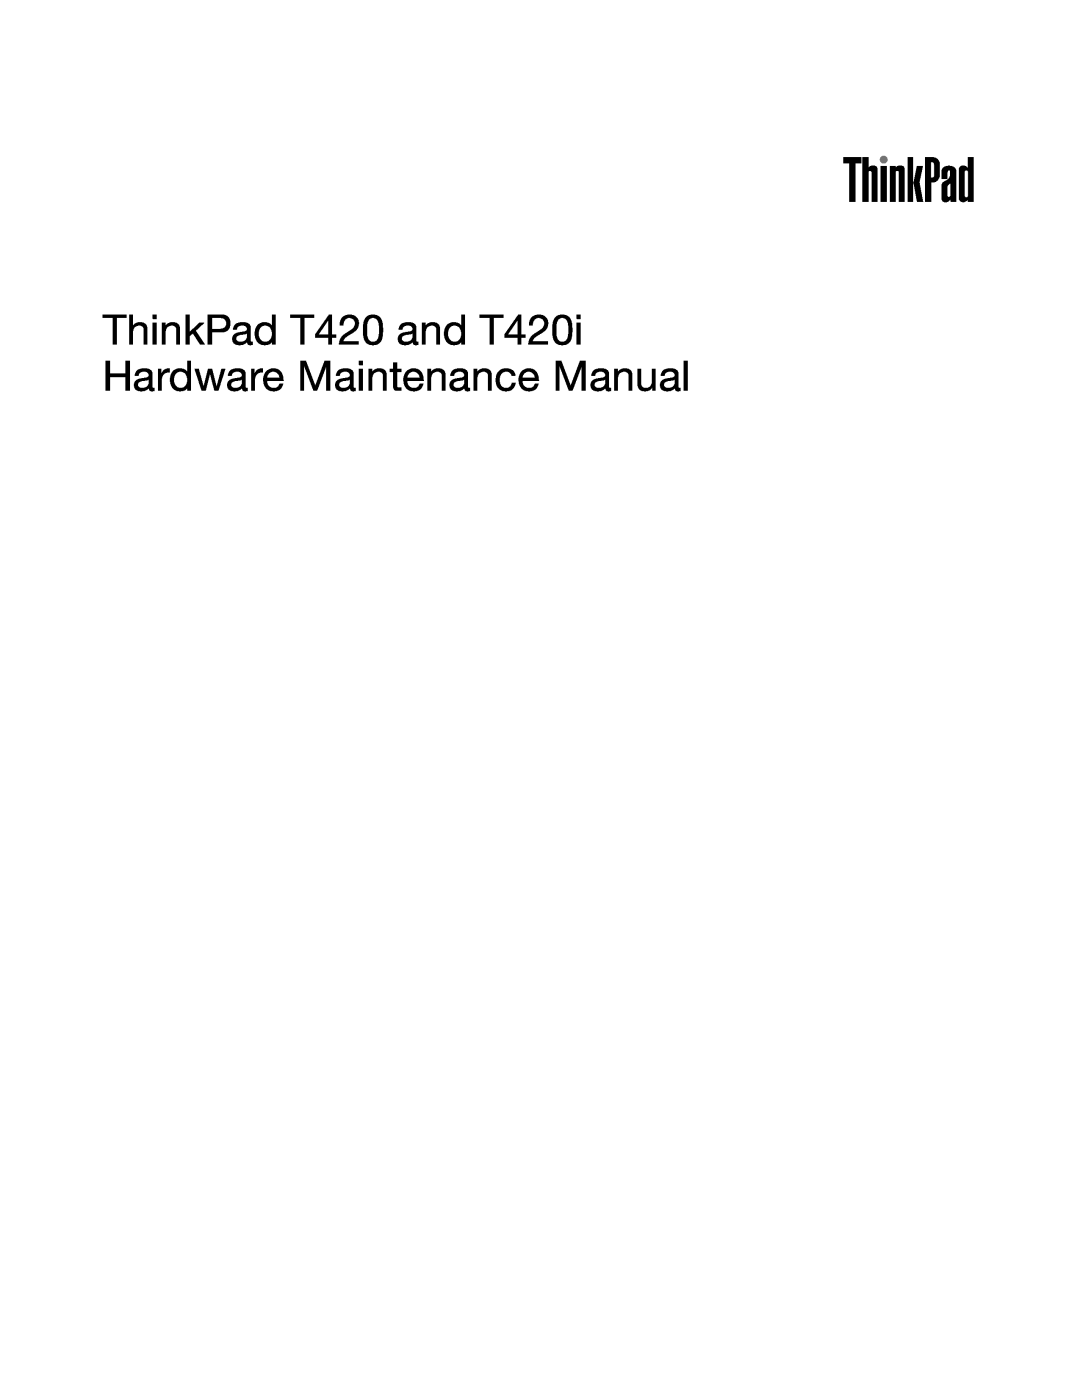 Lenovo manual ThinkPad T420 and T420i Hardware Maintenance Manual 